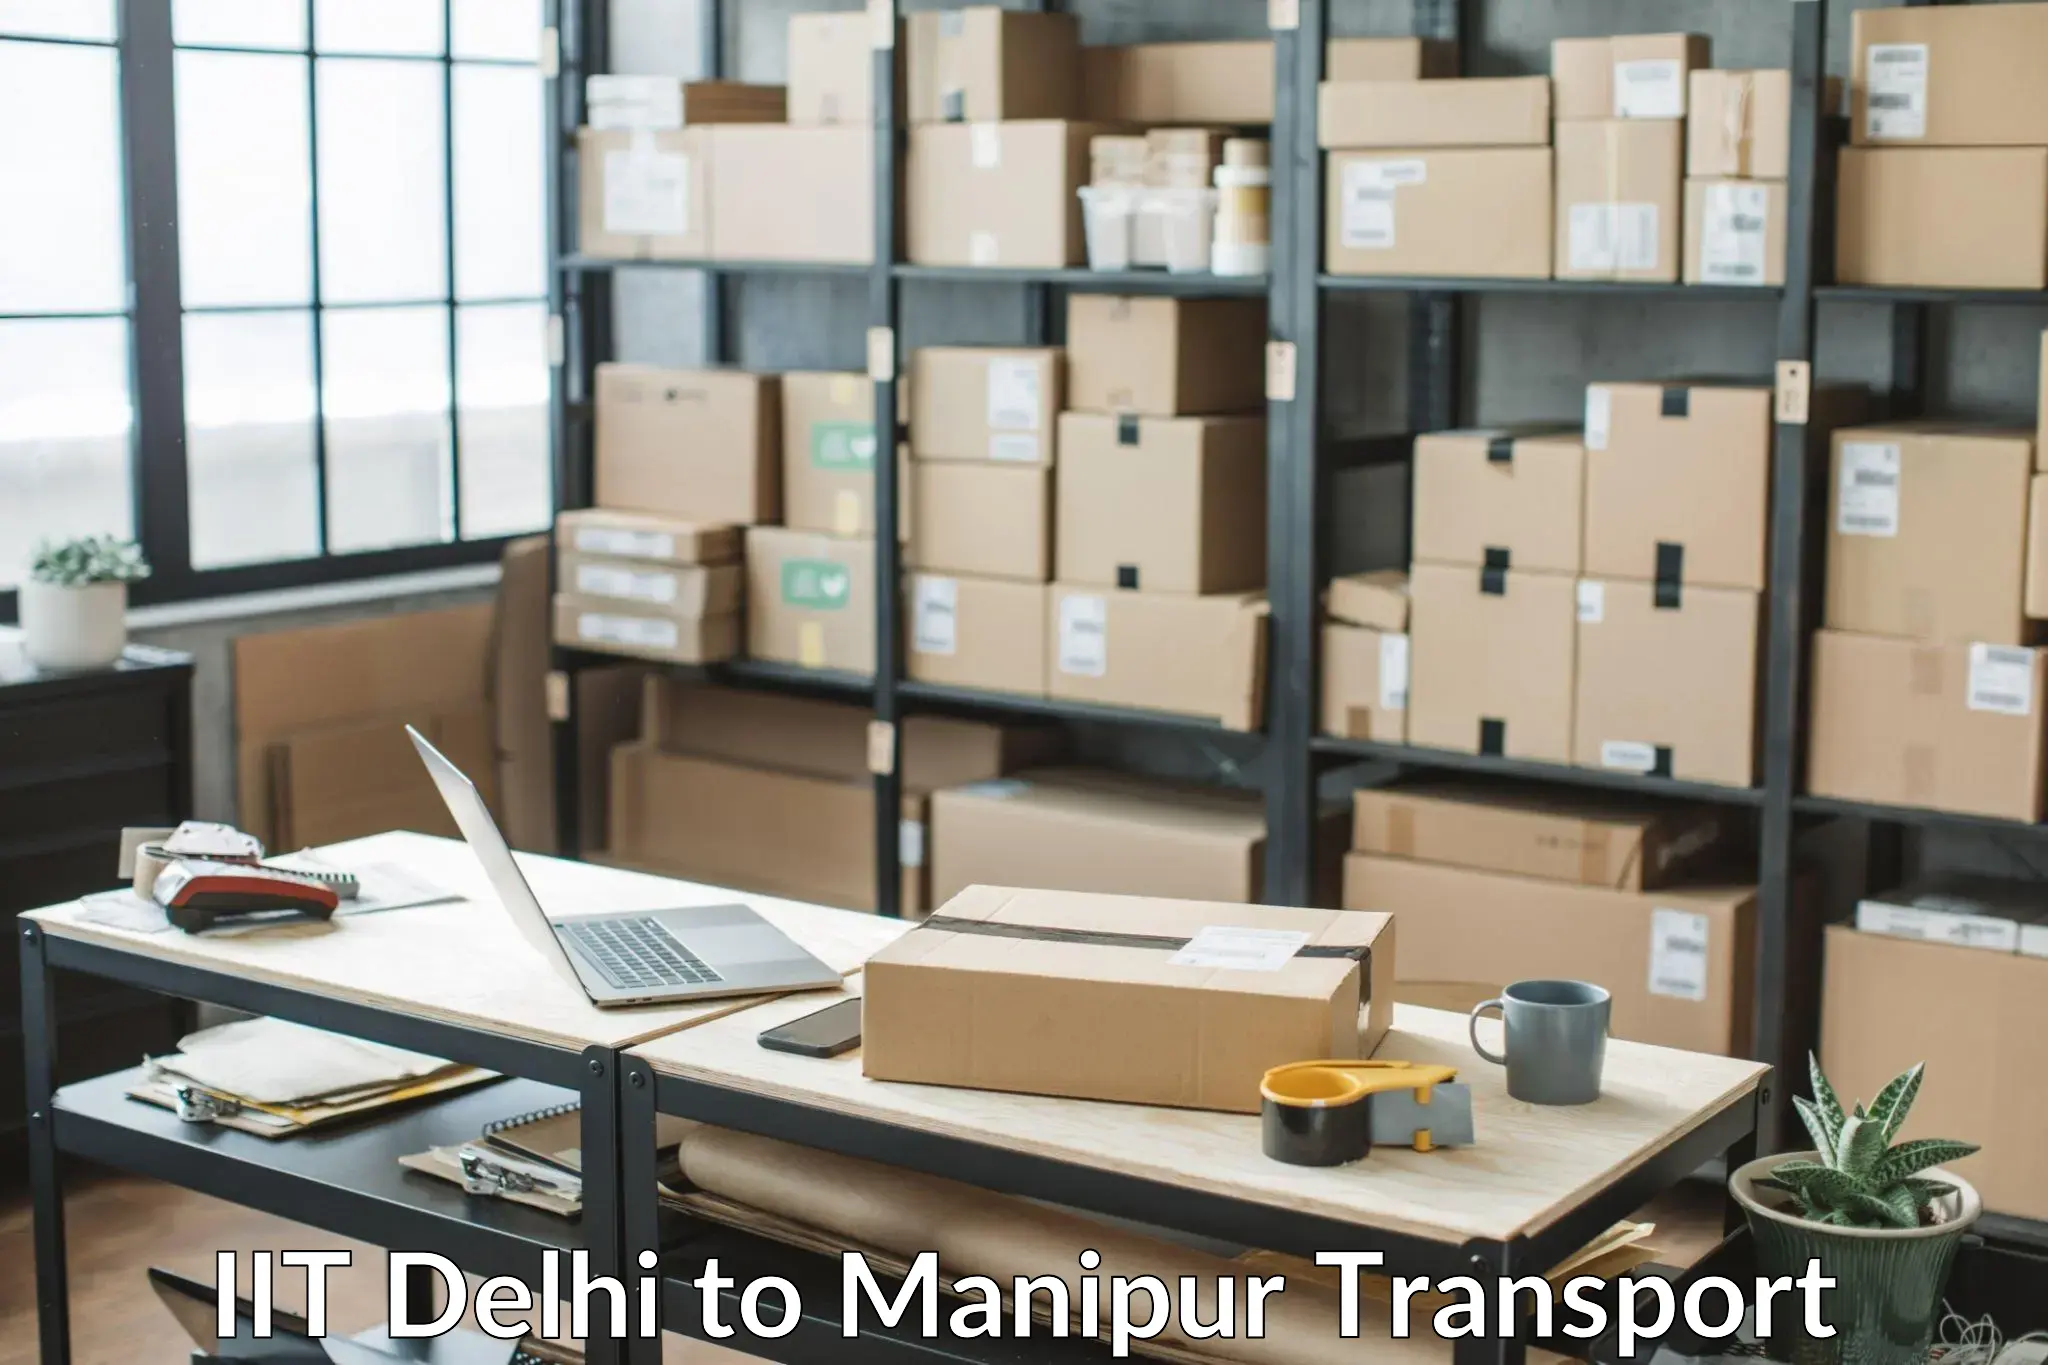 Online transport IIT Delhi to Manipur